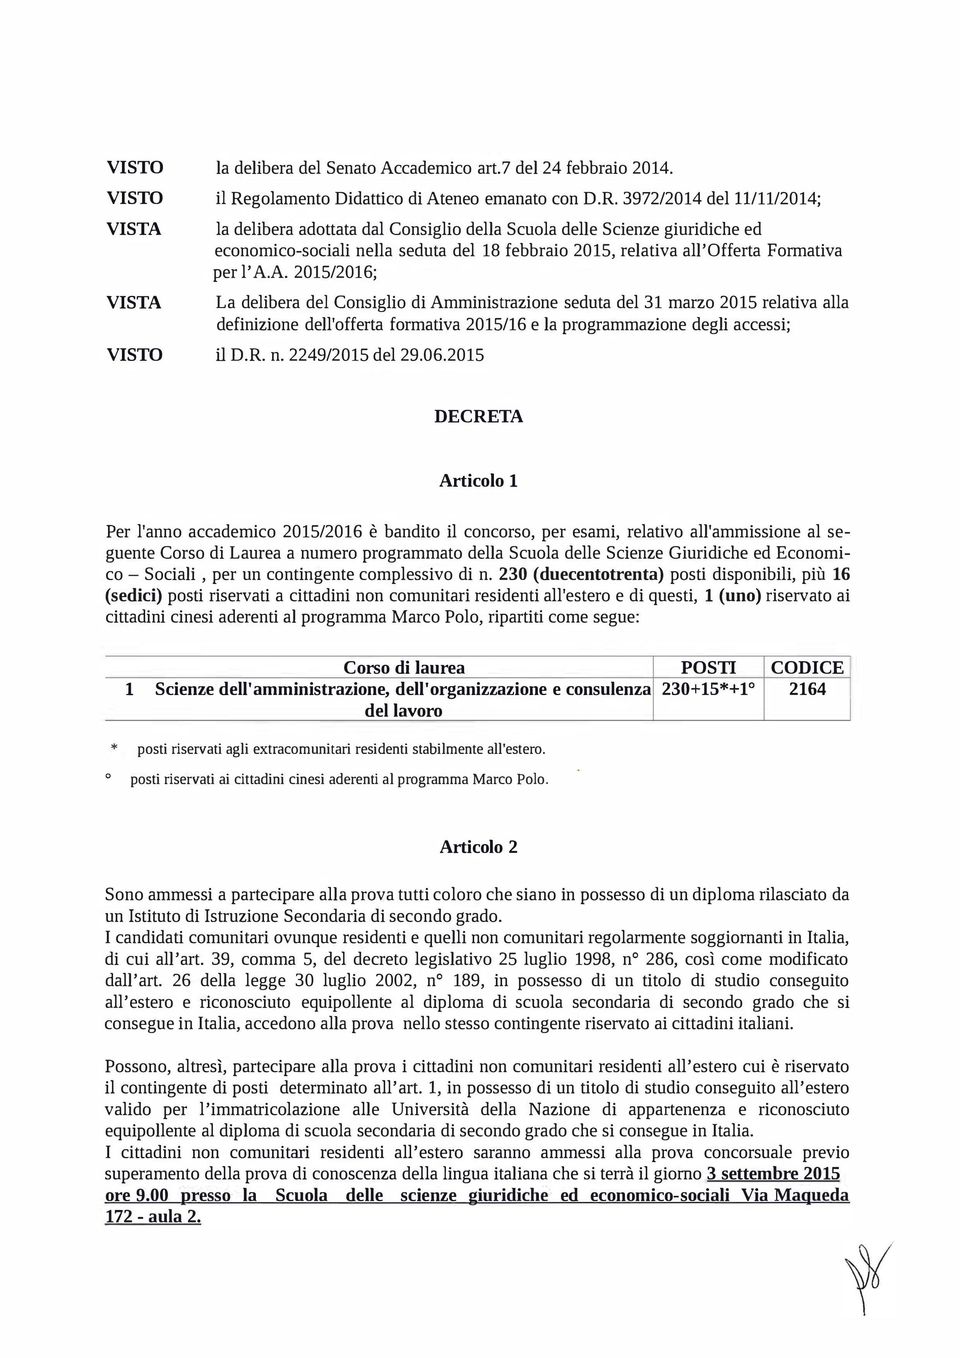 3972/2014 del ll/11/2014; la delibera adottata dal Consiglio della Scuola delle Scienze giuridiche ed economico-sociali nella seduta del 18 febbraio 2015, relativa all'offerta Formativa per l' A.